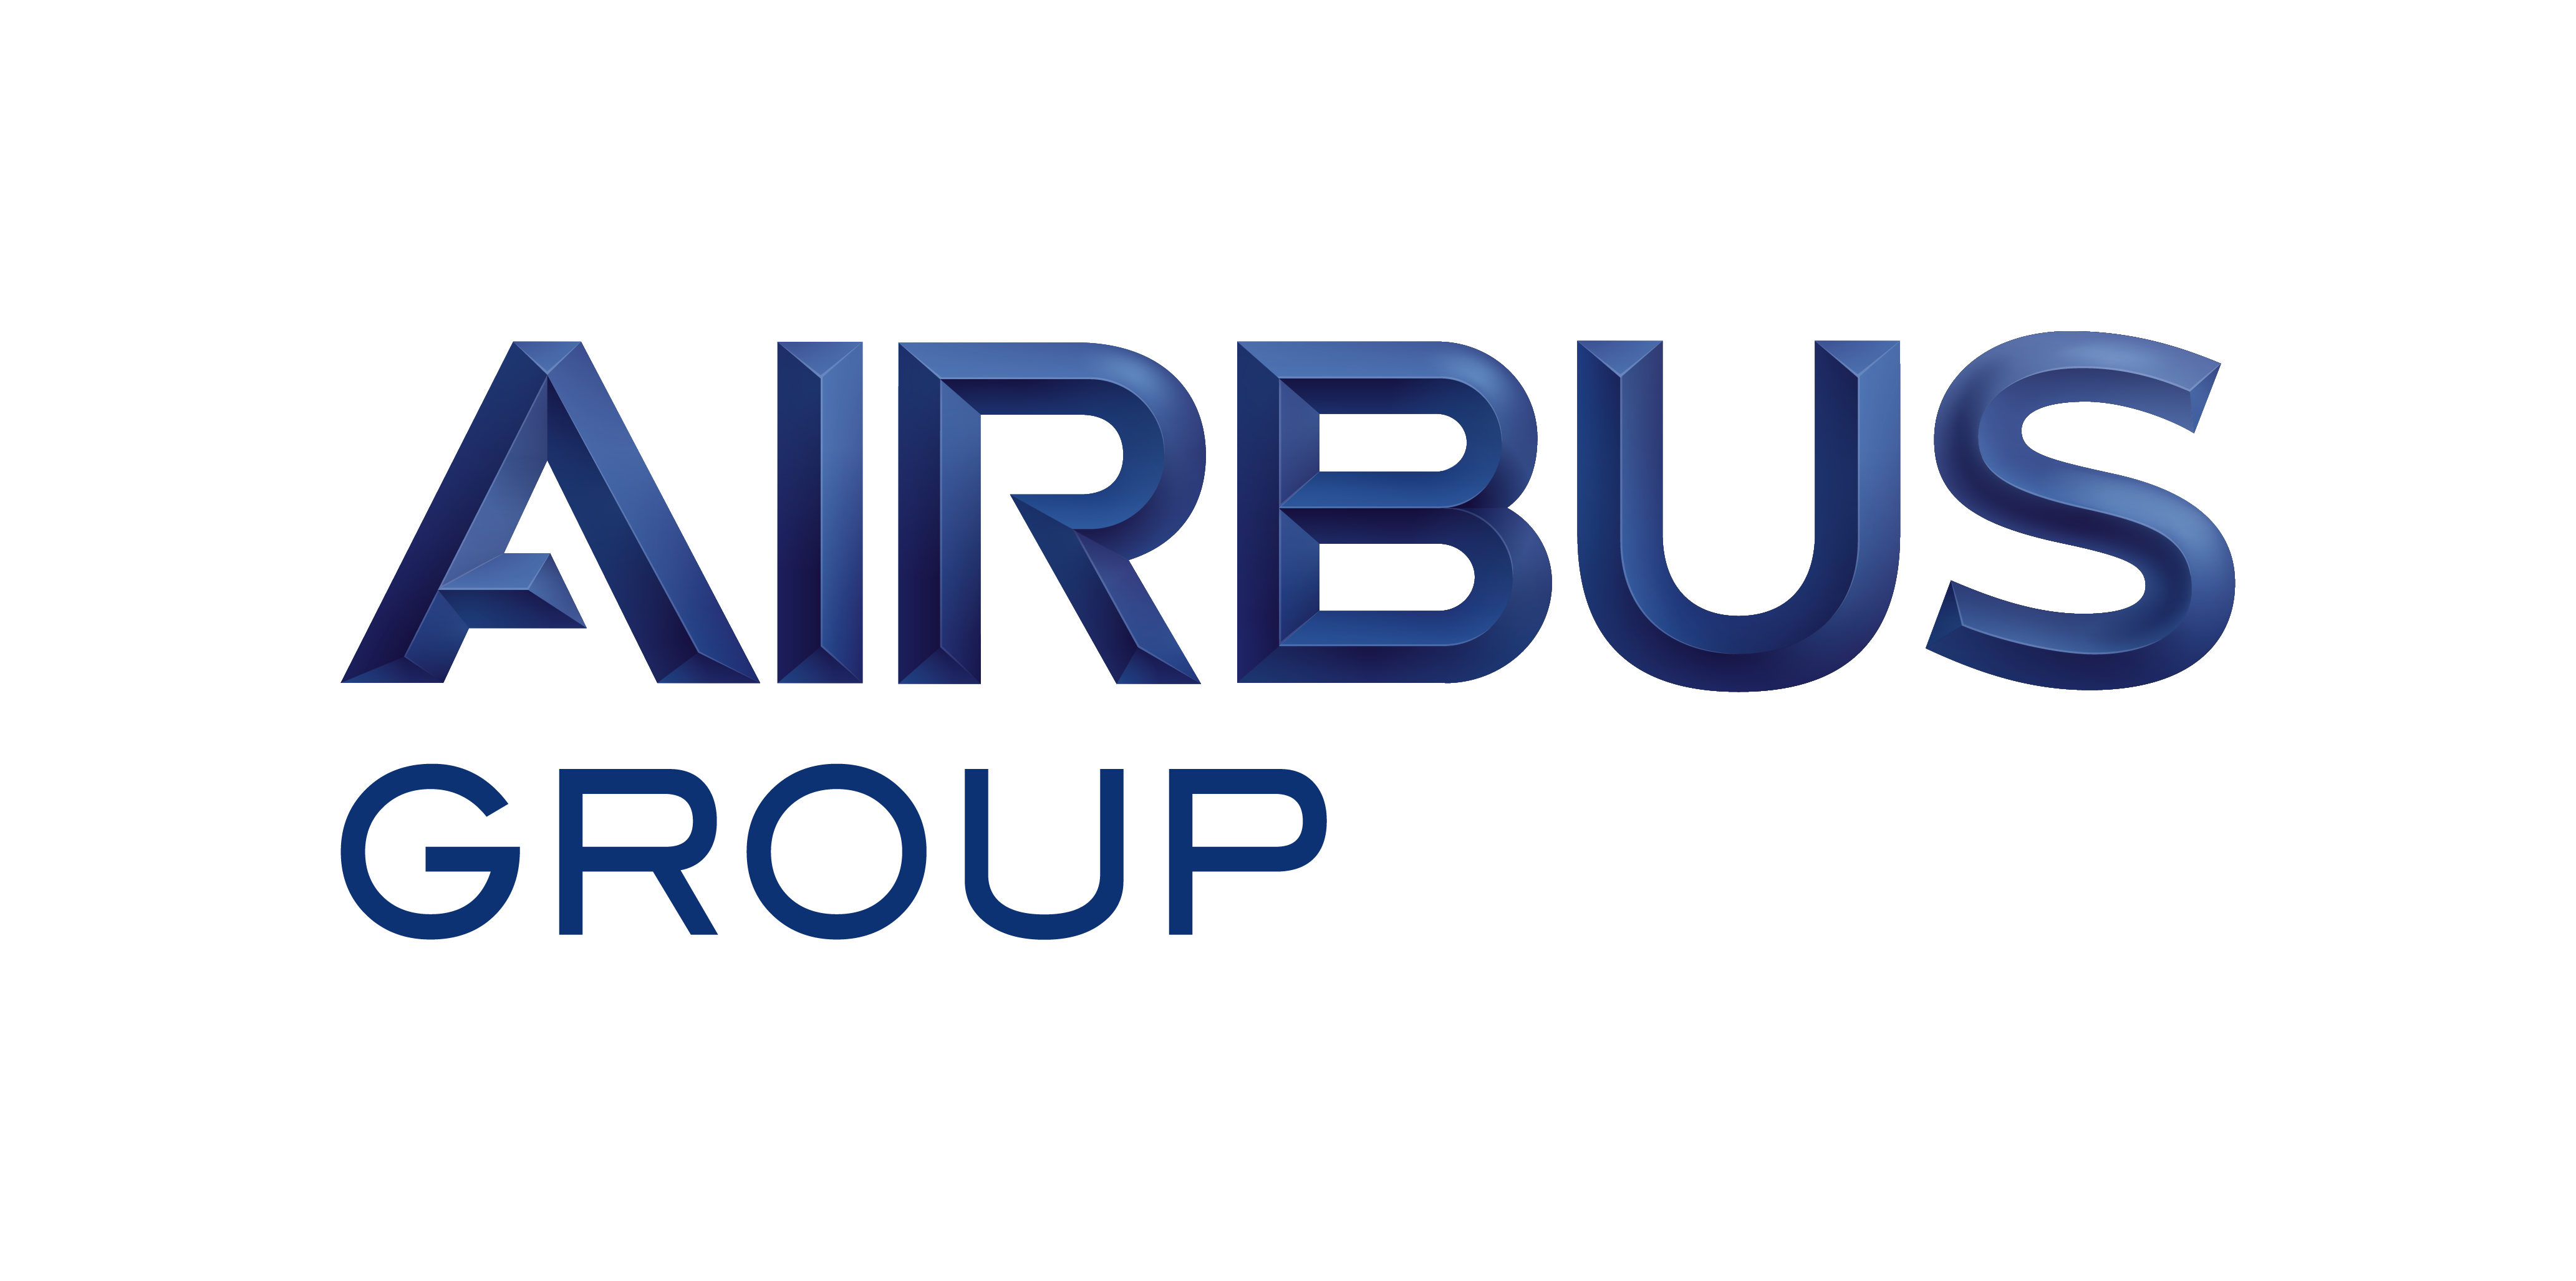 File:Airbus logo 2017.png